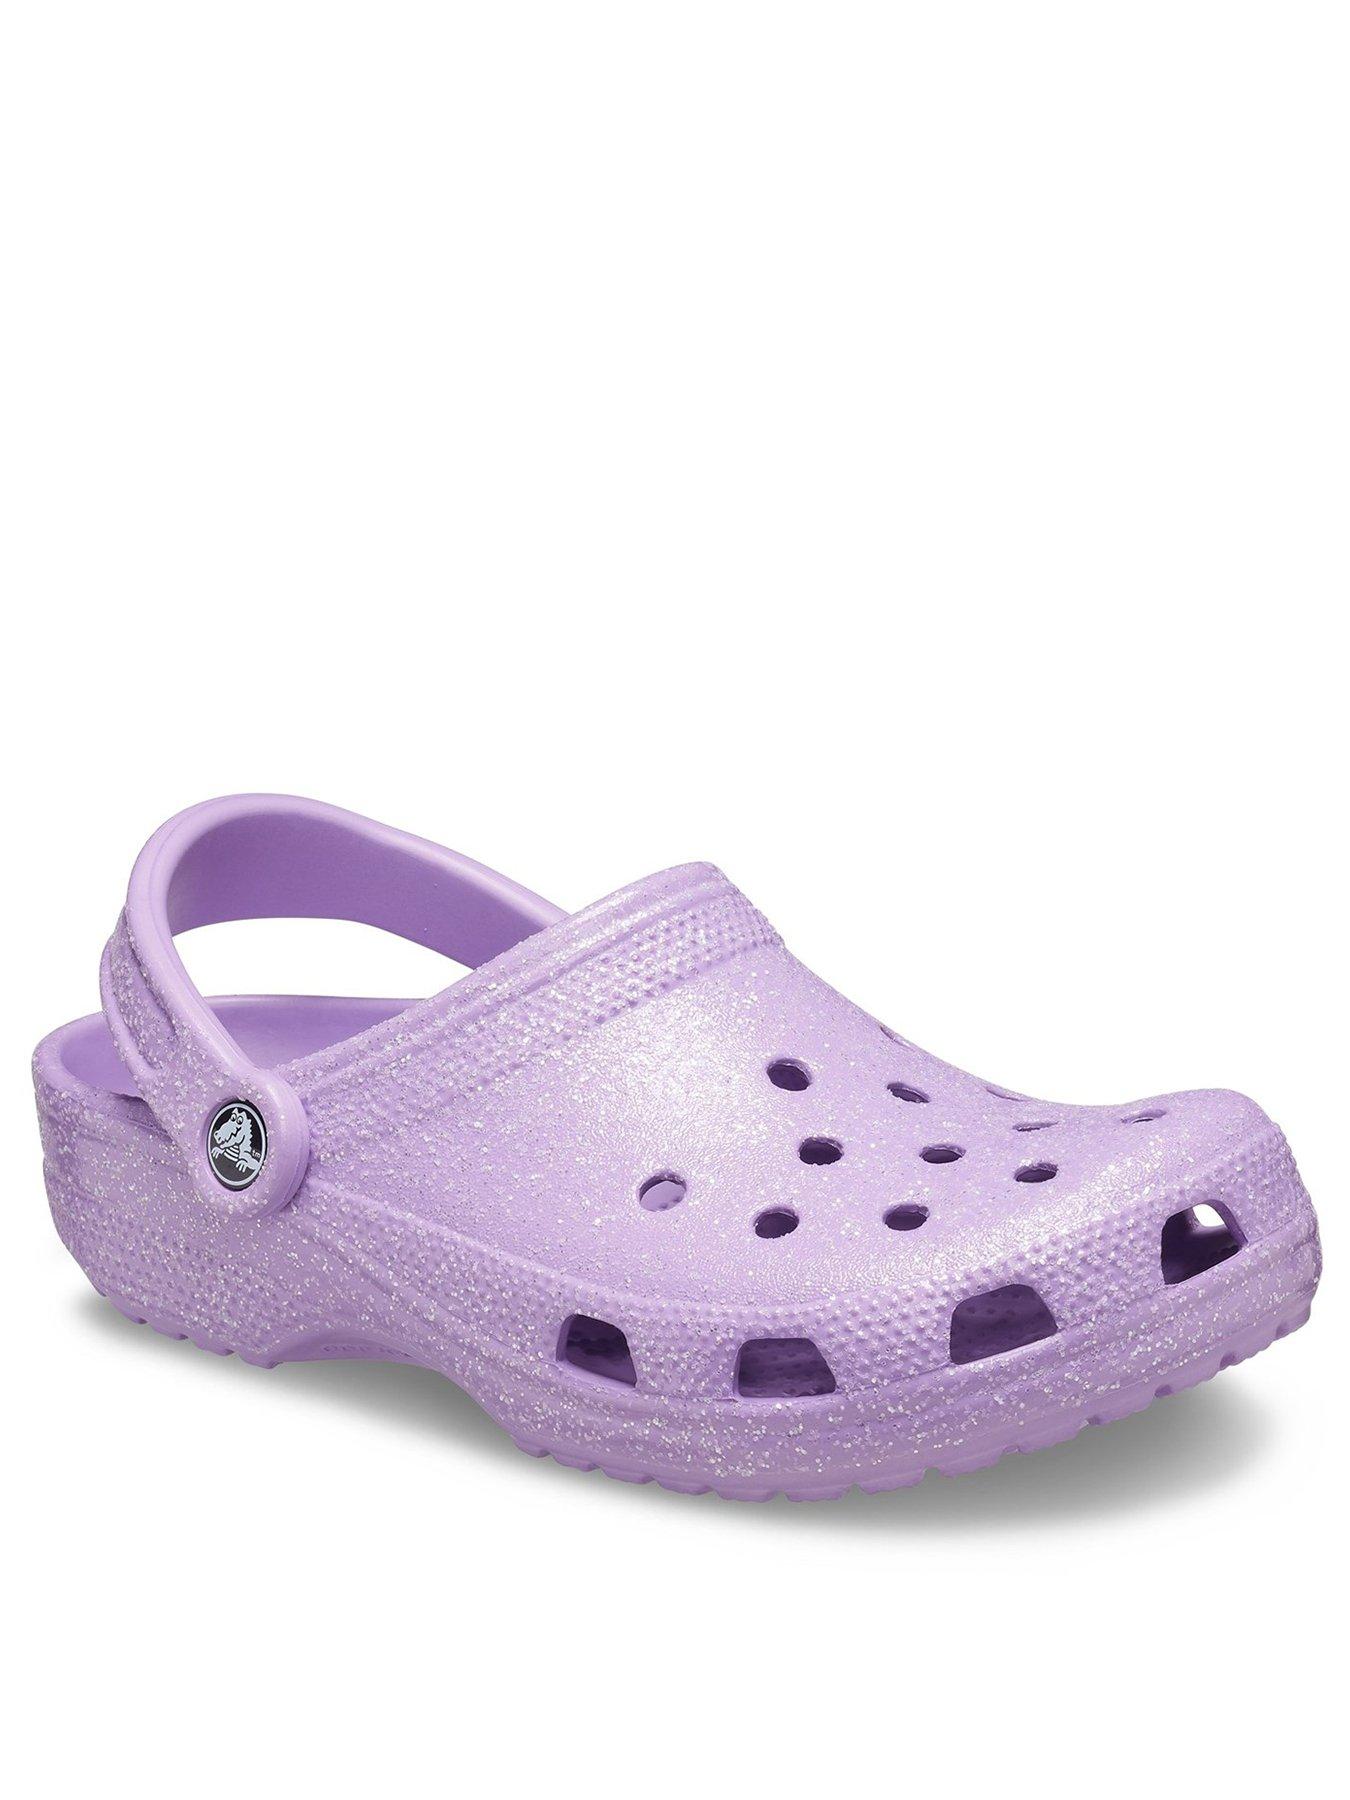 Crocs Sugar Glitter Clog Flat Shoes - Purple | littlewoods.com